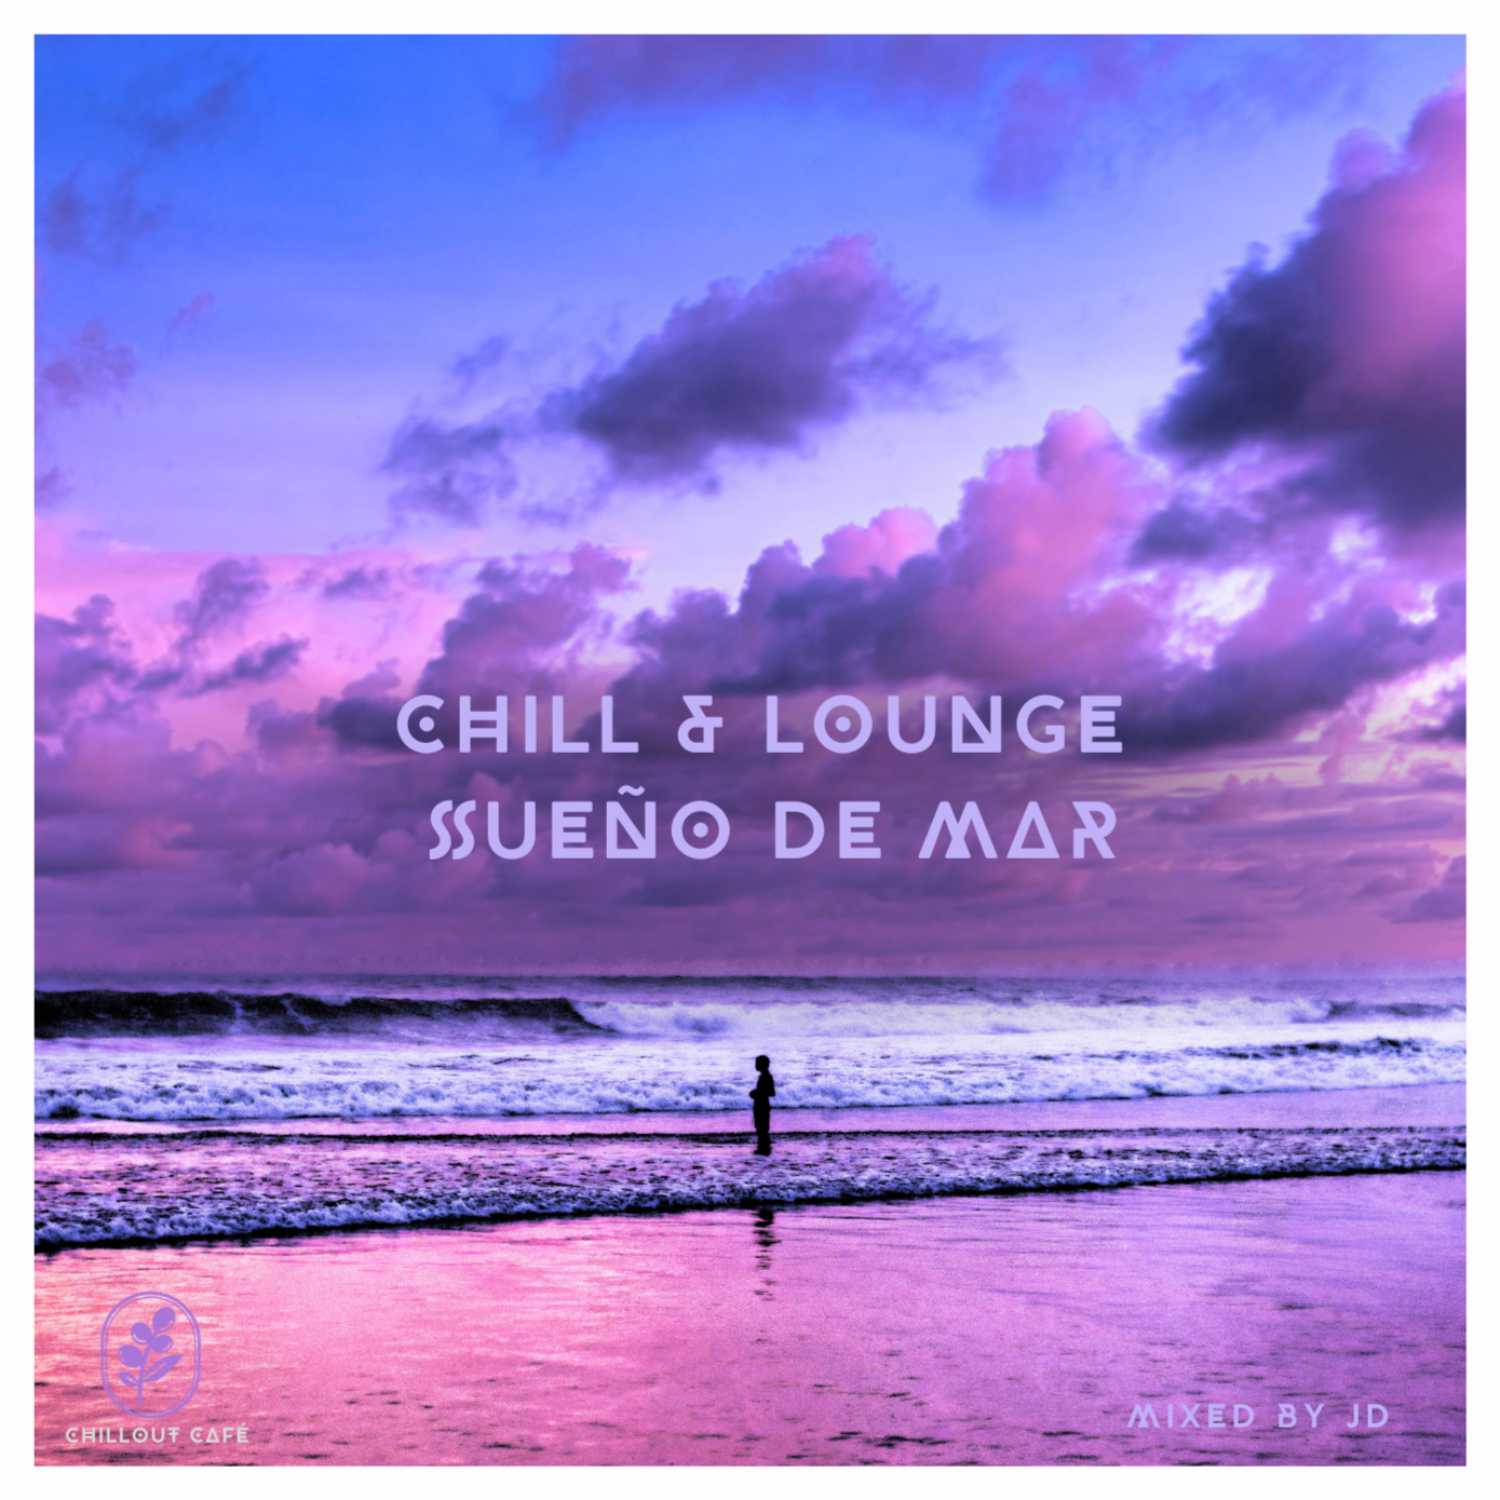 Chill & Lounge Sueño de Mar